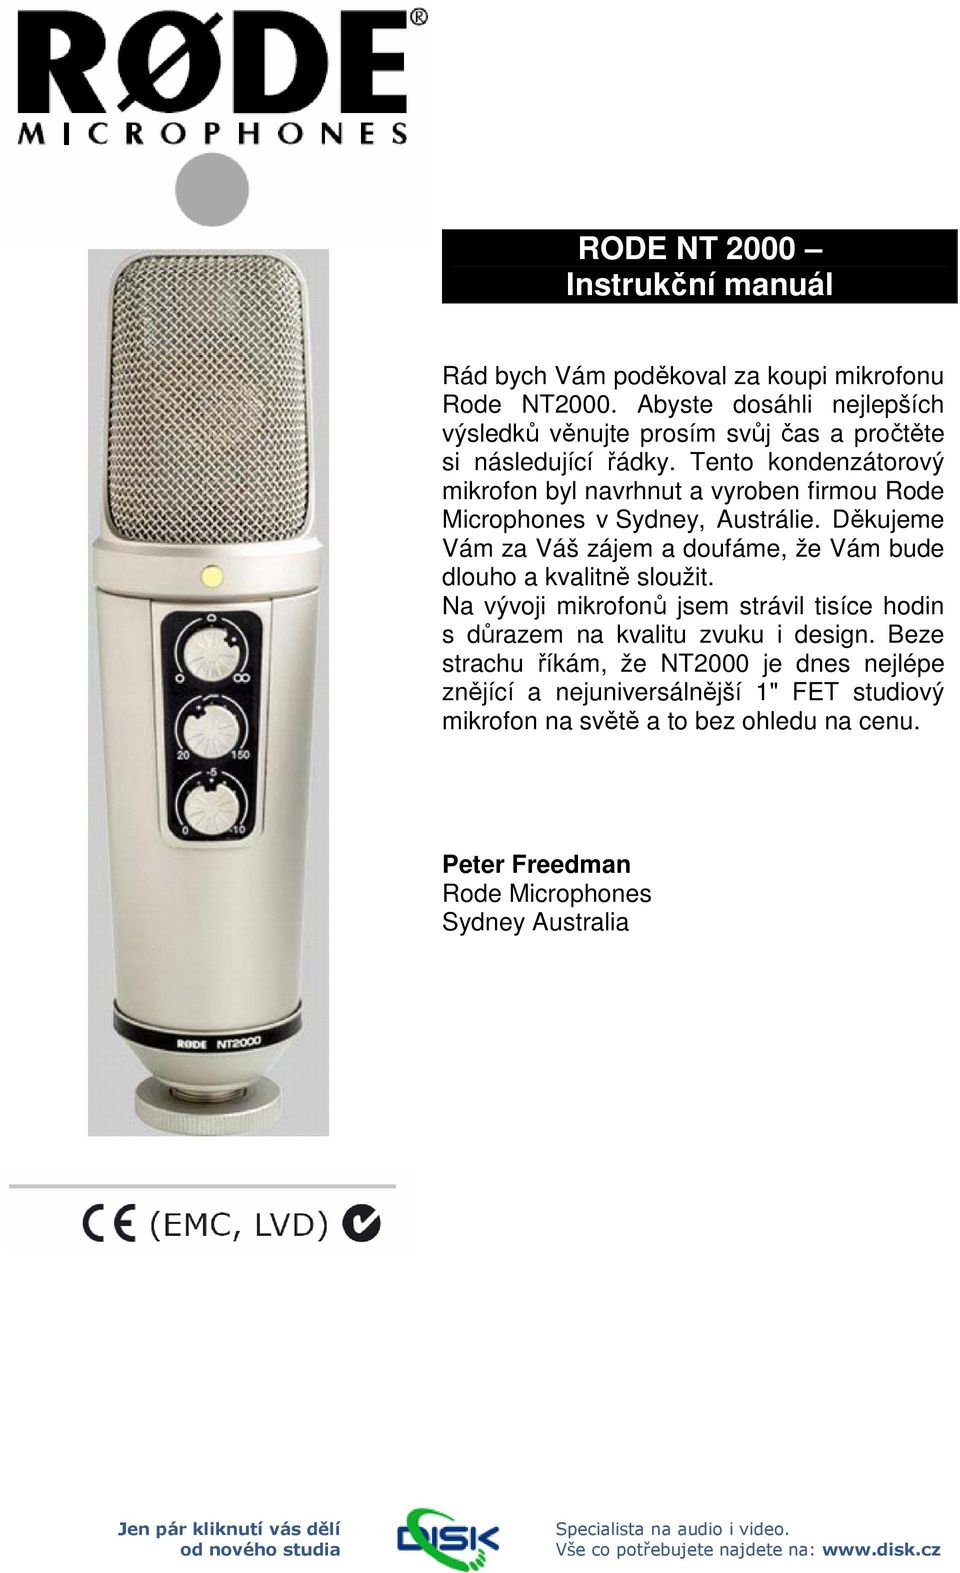 Tento kondenzátorový mikrofon byl navrhnut a vyroben firmou Rode Microphones v Sydney, Austrálie.